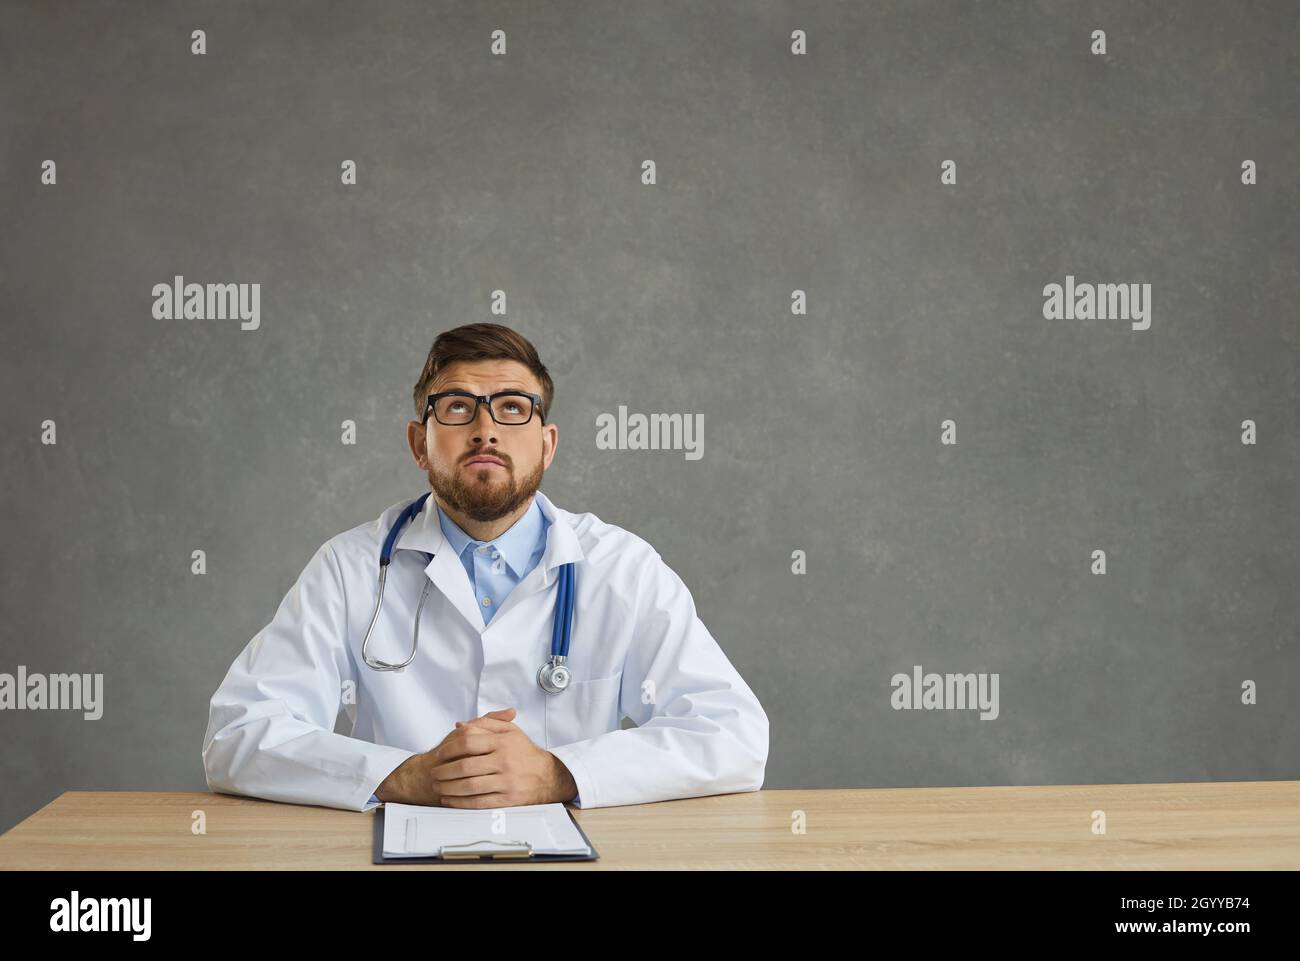 Un jeune médecin masculin rêveur avec une expression pensive regarde assis à une table sur un fond gris. Banque D'Images